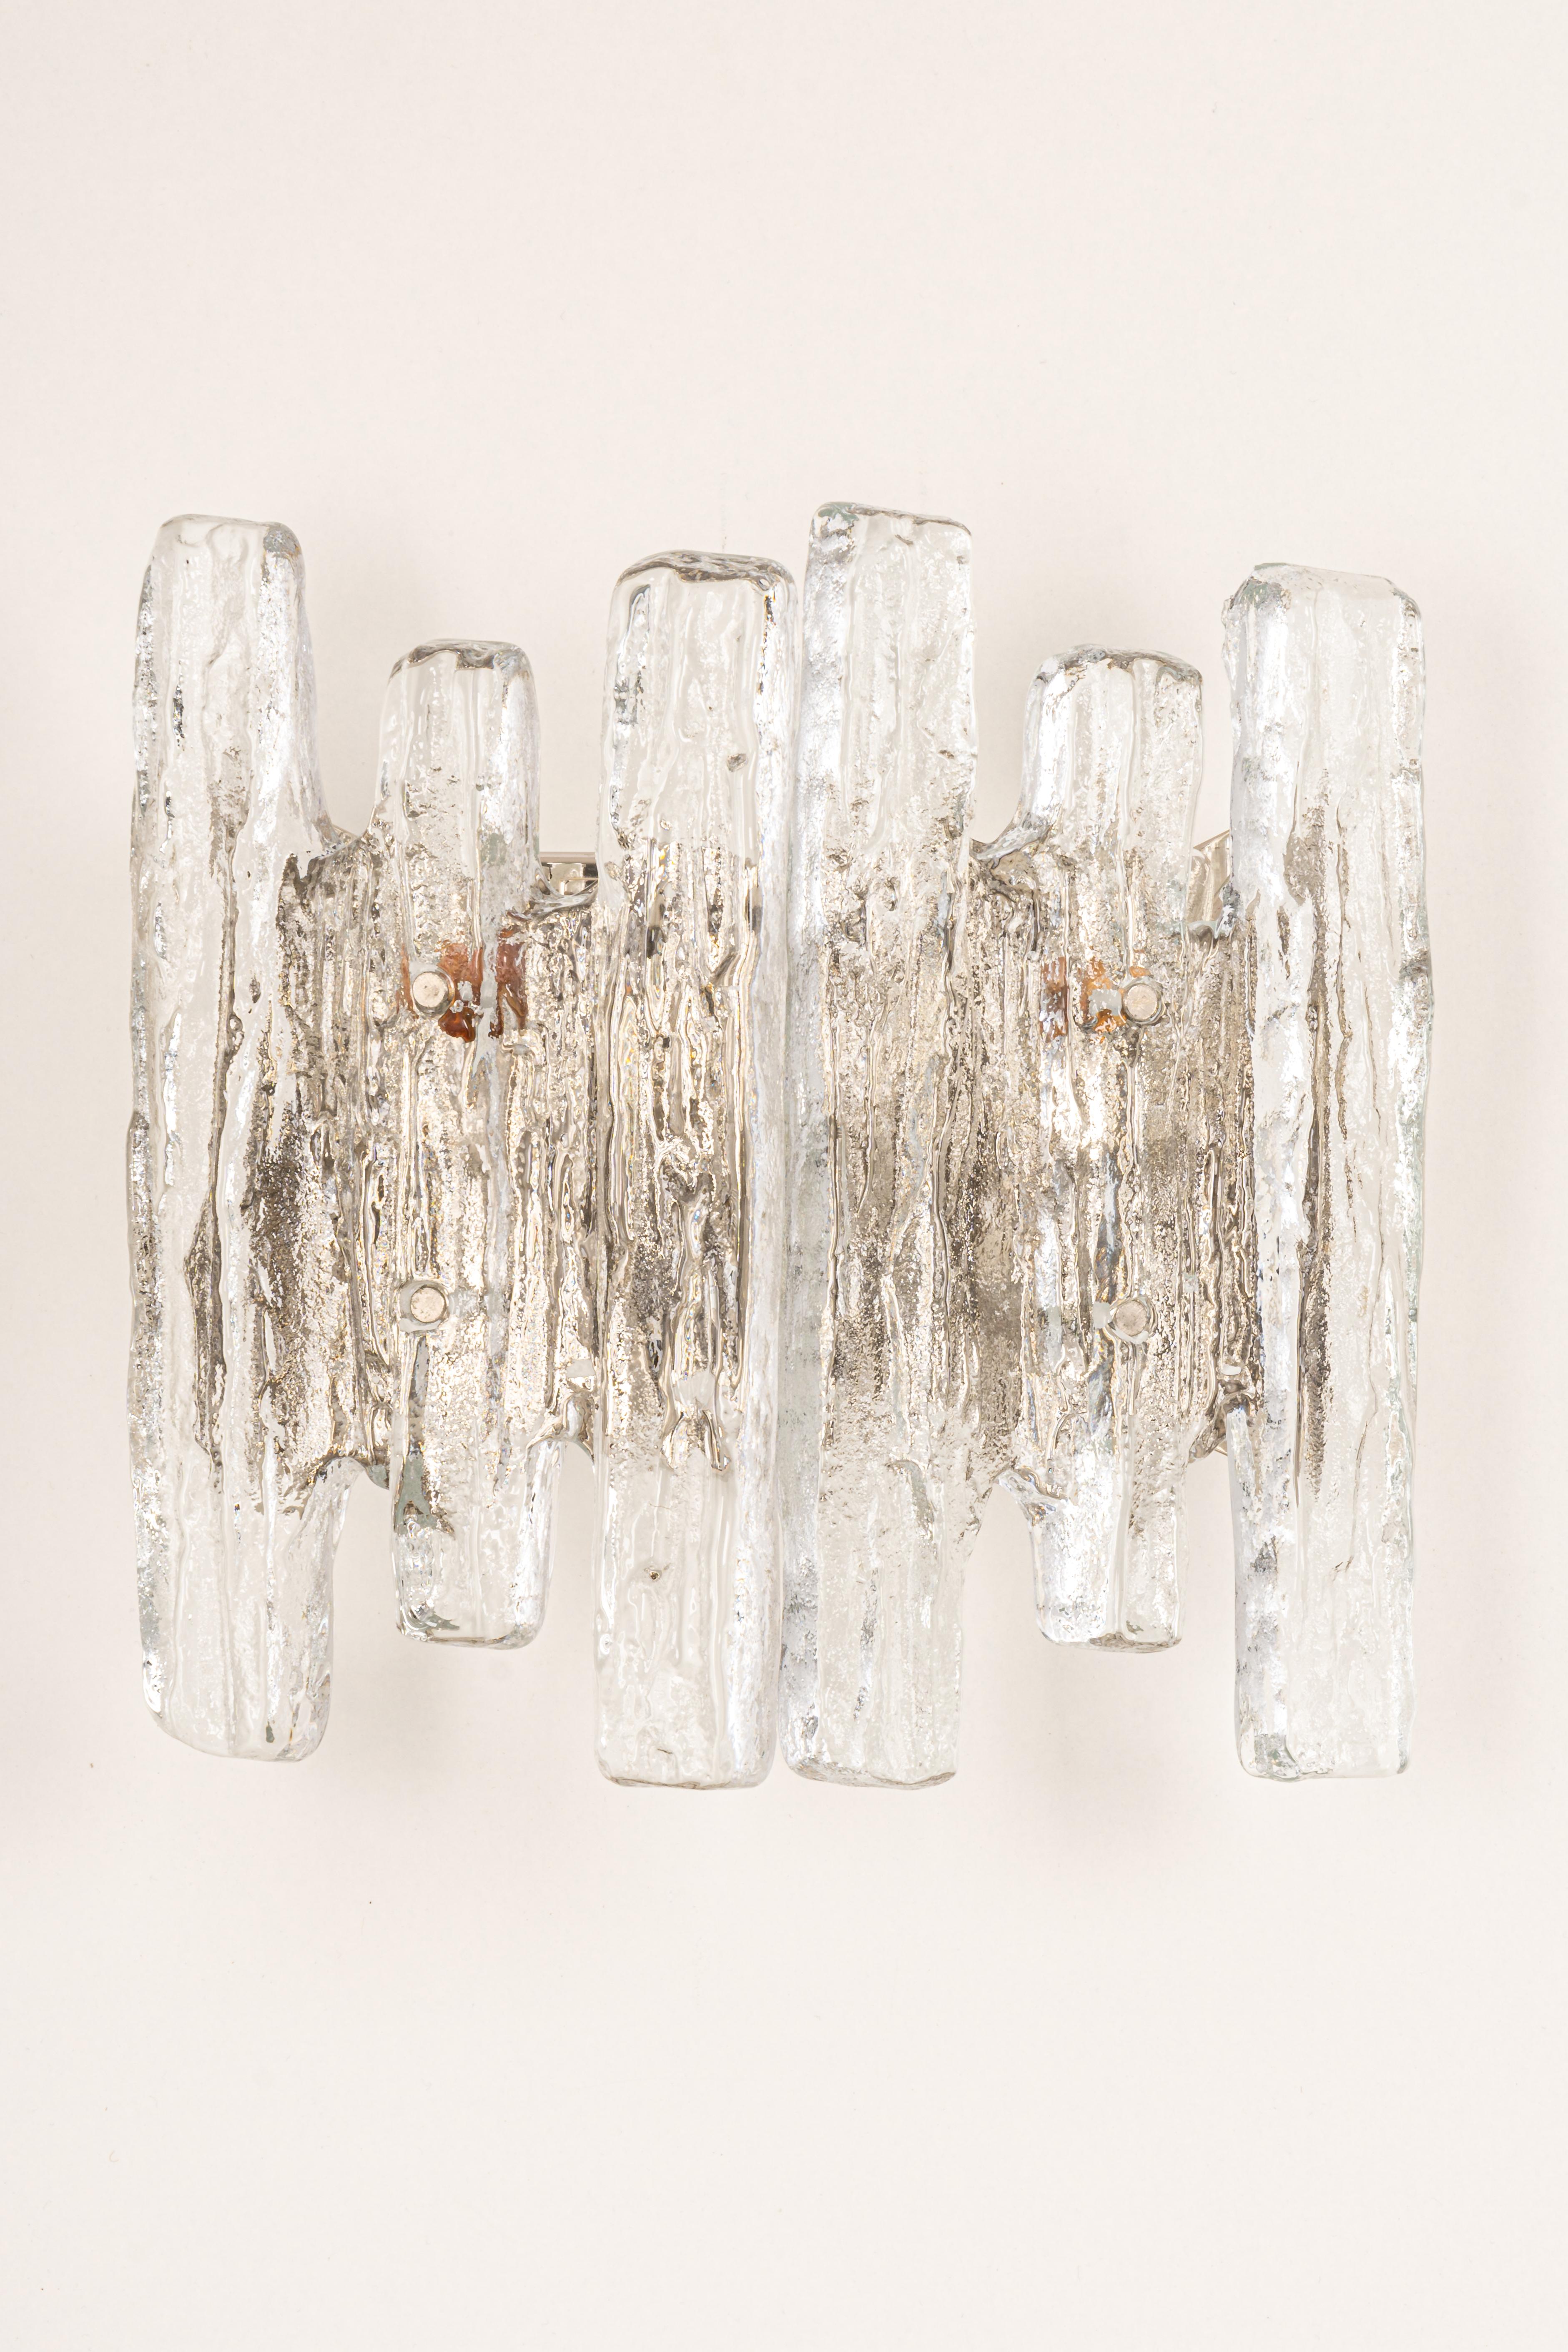 Wunderschönes Paar Wandleuchter aus der Mitte des Jahrhunderts mit Eisglas, hergestellt von Kalmar, Österreich, ca. 1960-1969.
Hochwertig und in sehr gutem Zustand. Gereinigt, gut verkabelt und einsatzbereit.  

Jede Leuchte benötigt 3 x E14